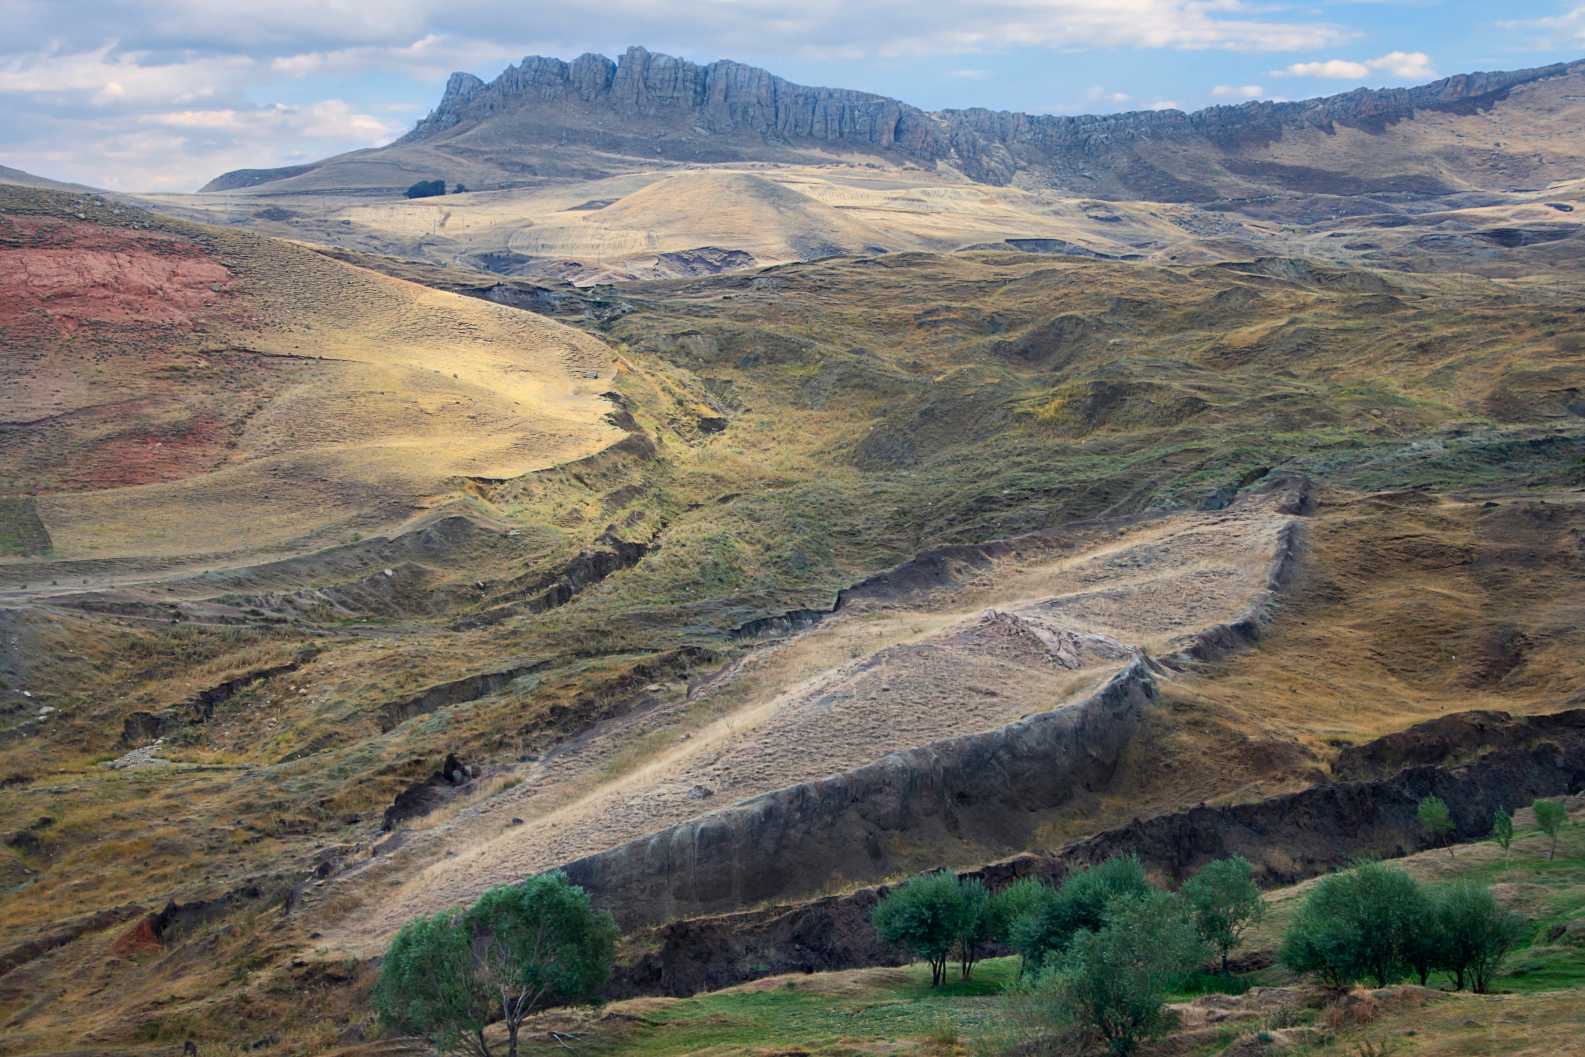 Rester af Noas ark med bådformet klippeformation på det sted nær Mt Ararat, hvor det menes, at arken blev hvilet i Dogubeyazit, Tyrkiet